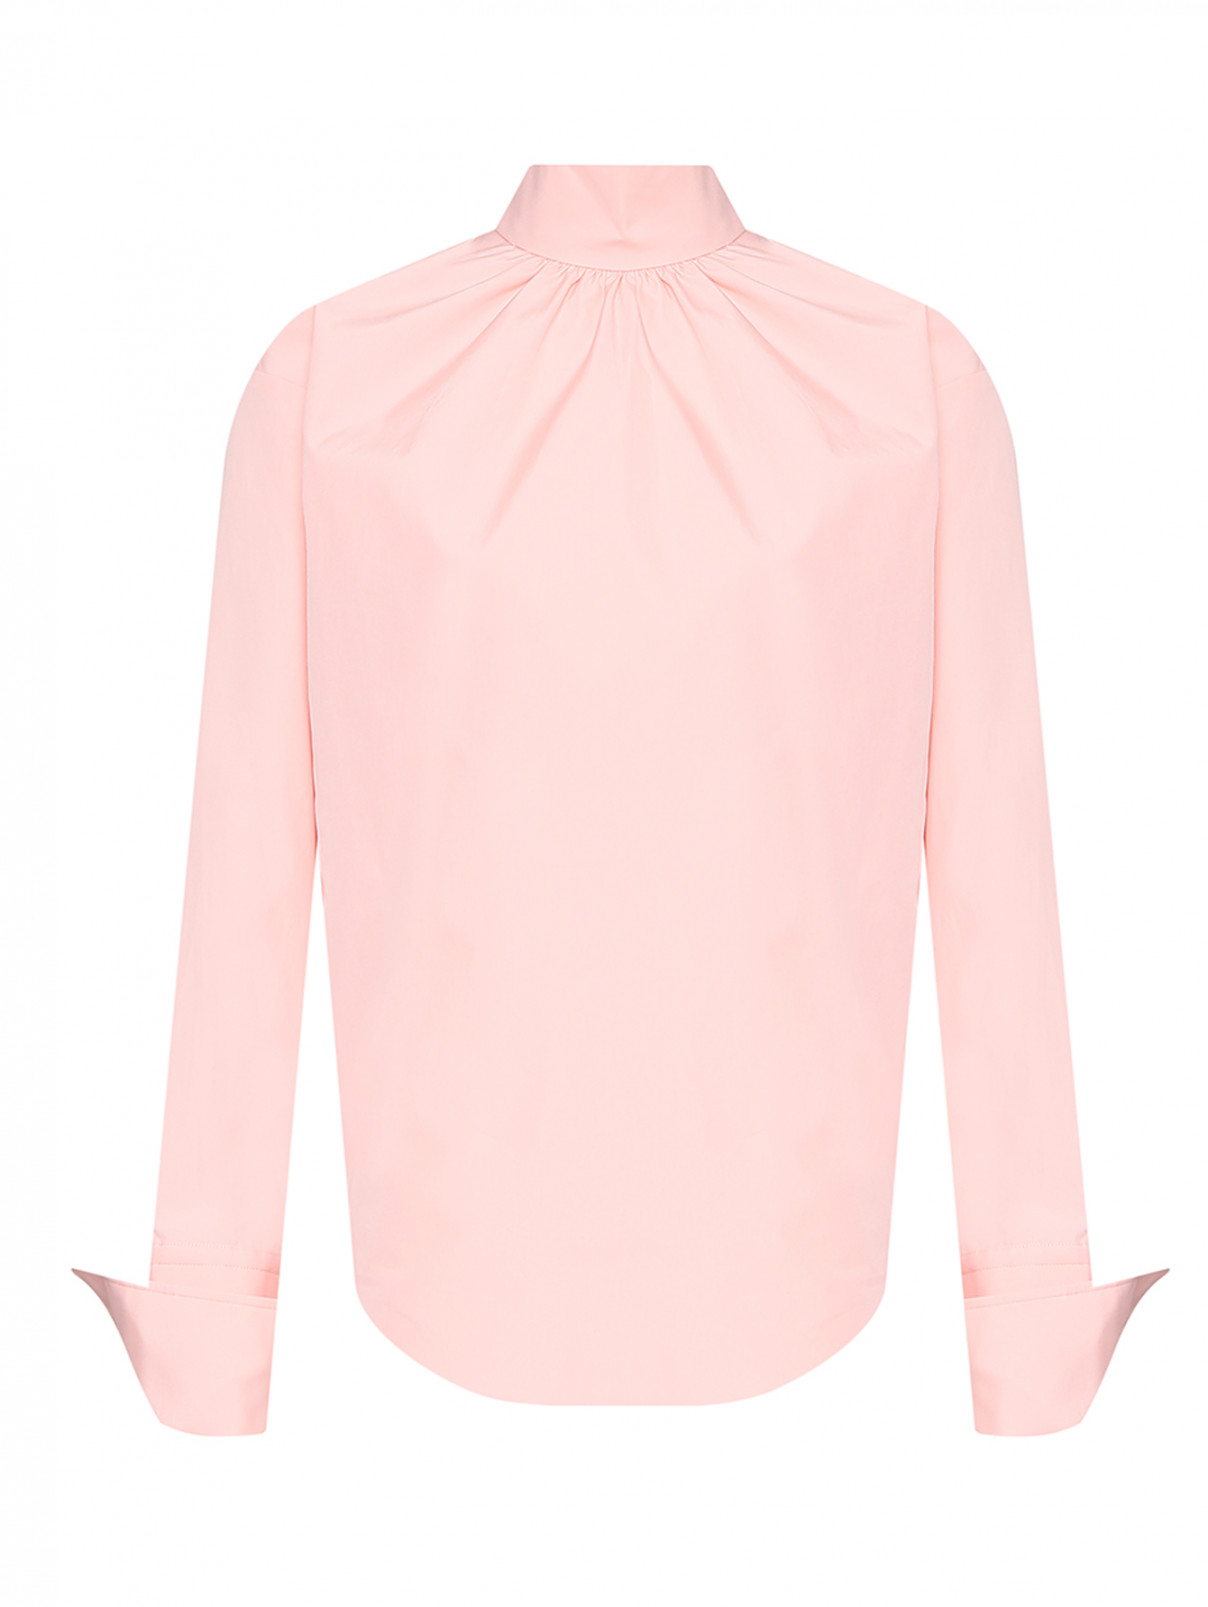 Однотонная блуза из хлопка Sportmax  –  Общий вид  – Цвет:  Розовый